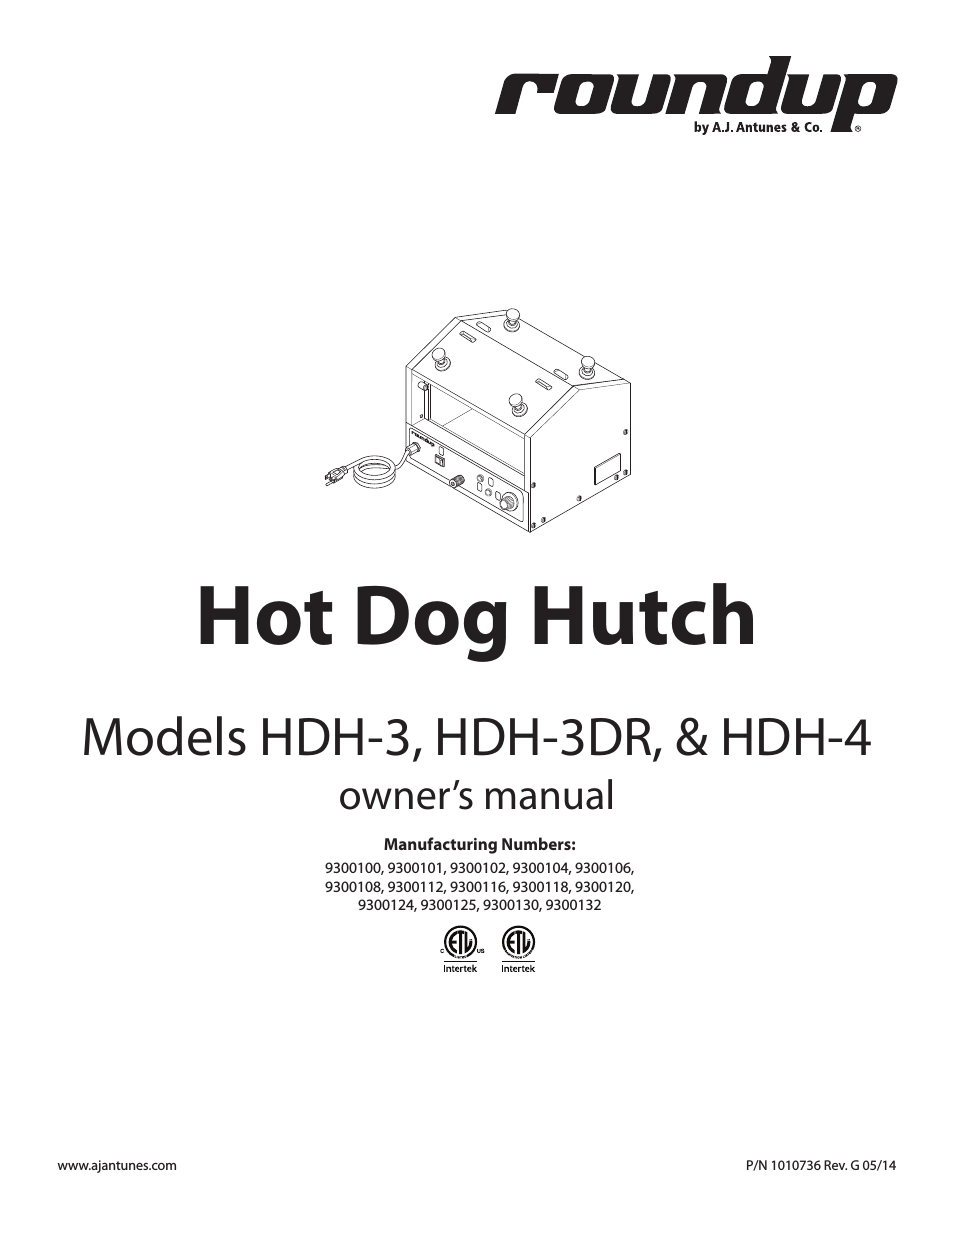 HDH-4 9300130